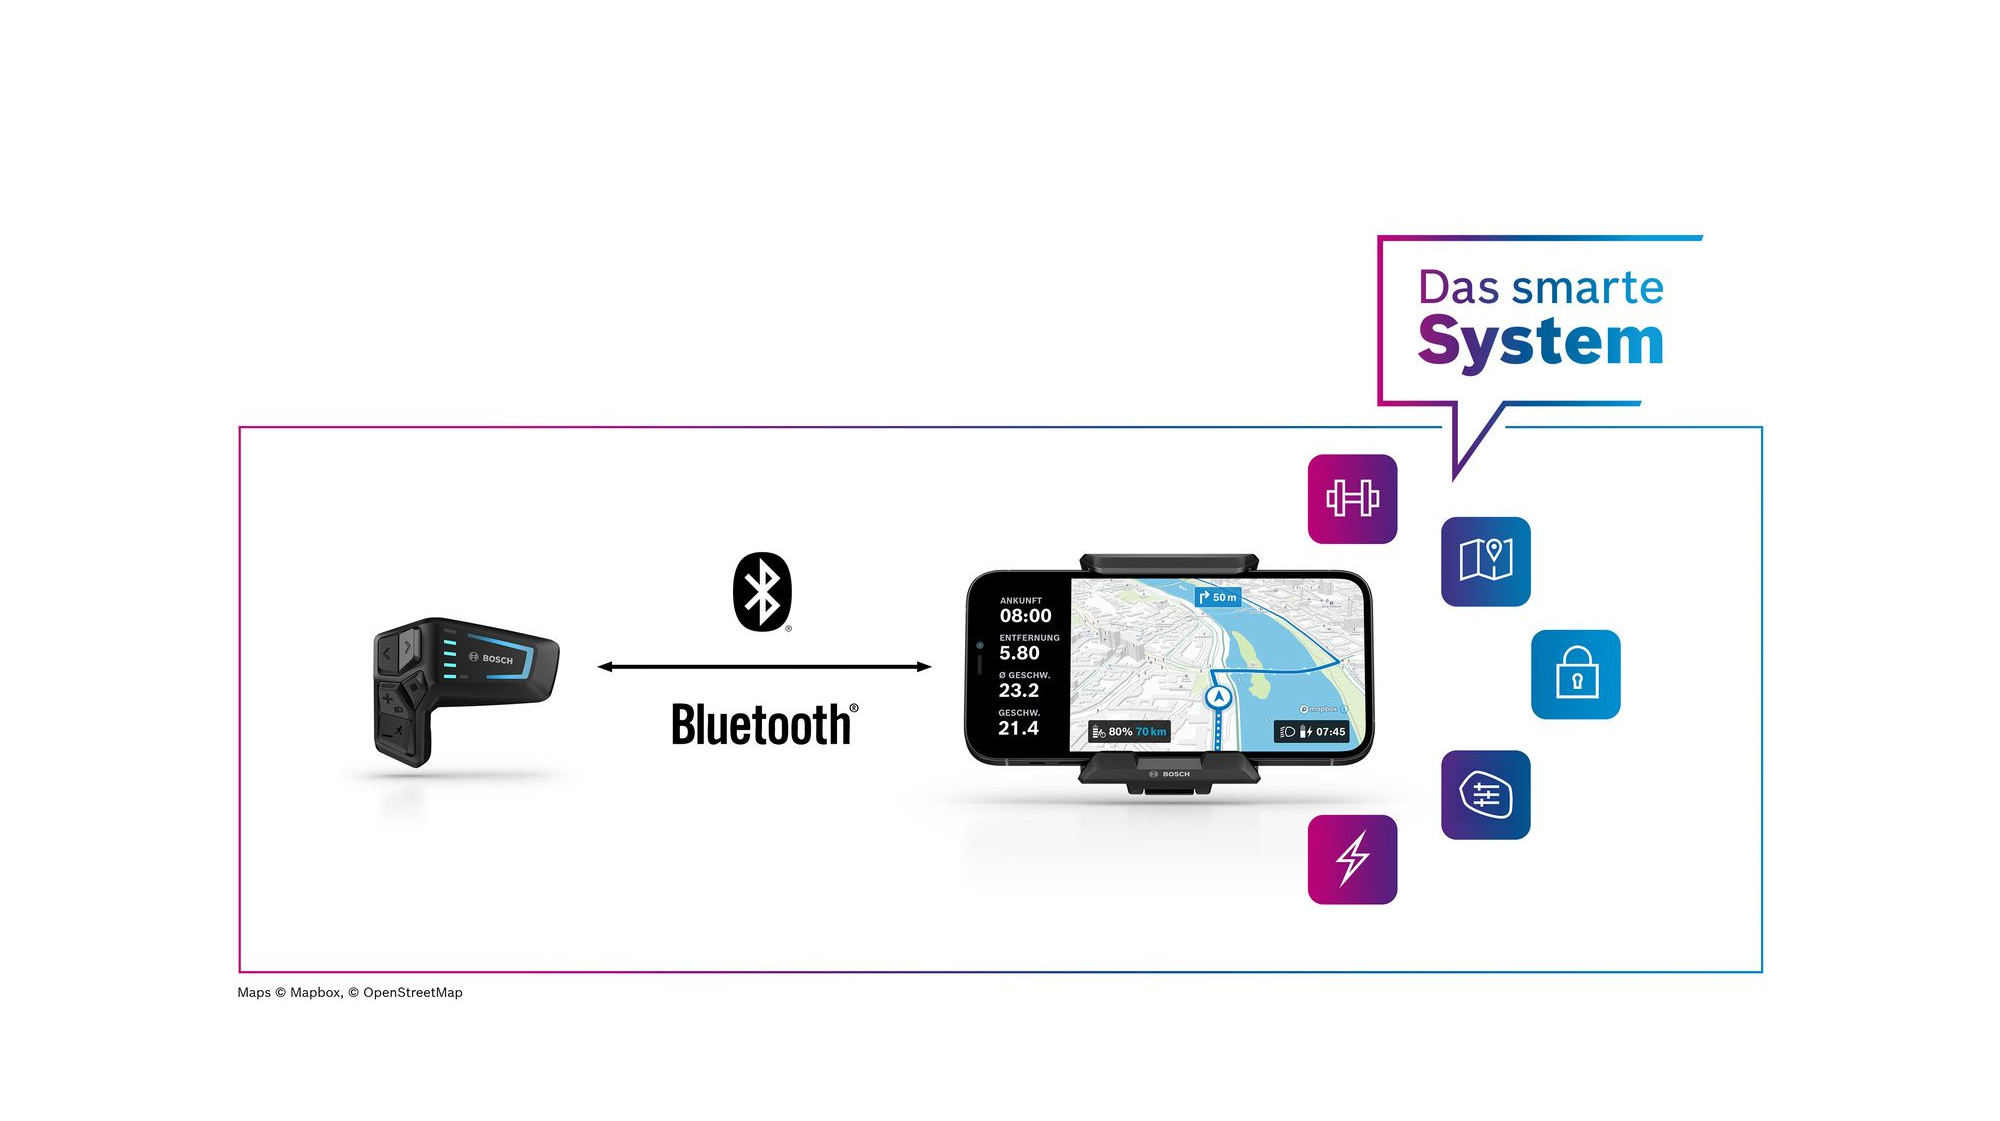 Smartphone Grip (BSP3200) - Bosch Smart System - Buy Online